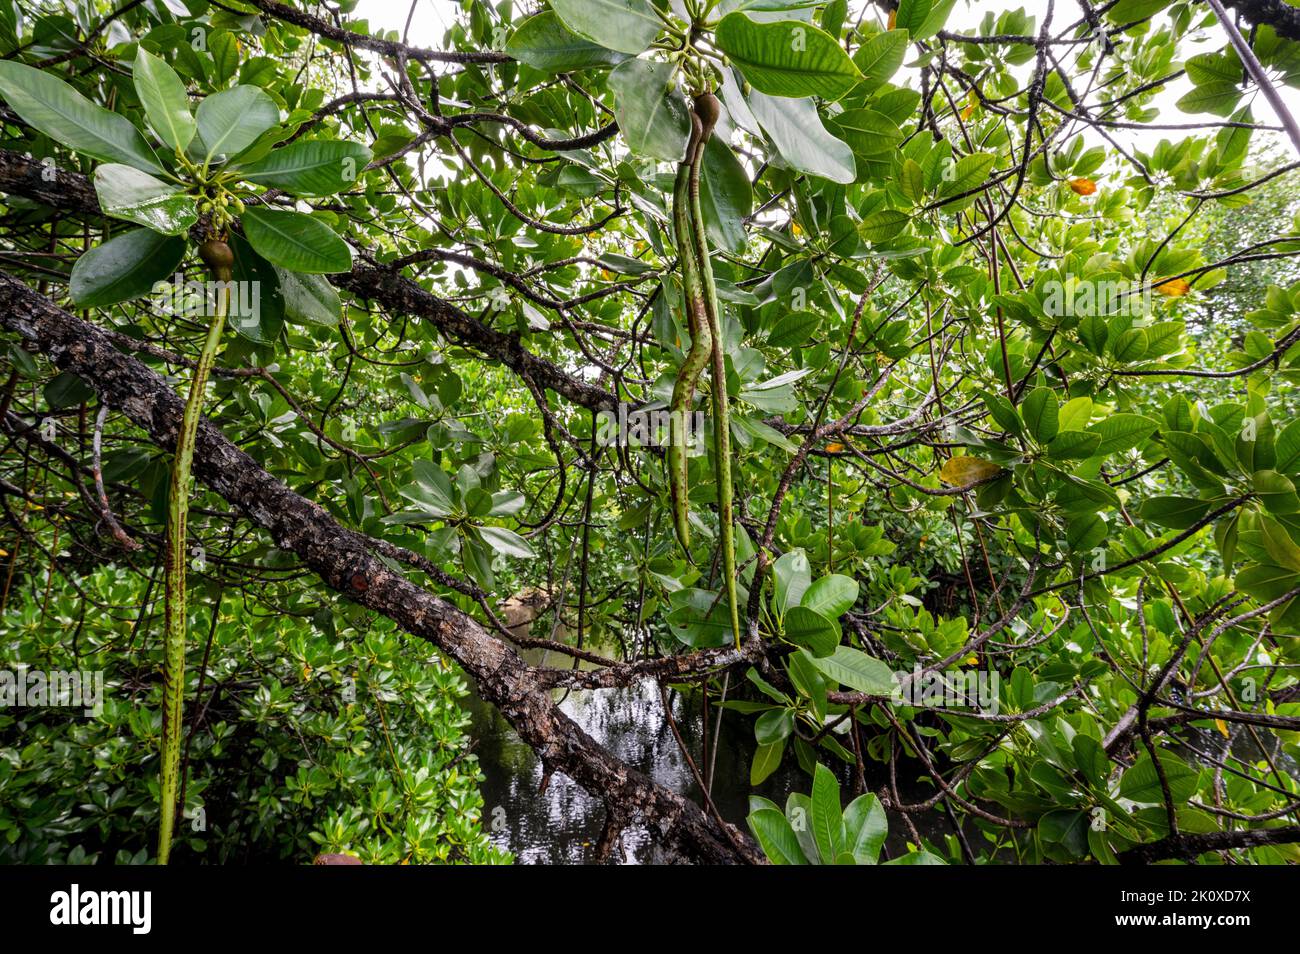 Las plántulas del mangle en el árbol, la isla de Gam, Rhizophora stylosa, Raja Ampat, Papúa Occidental, Indonesia Foto de stock